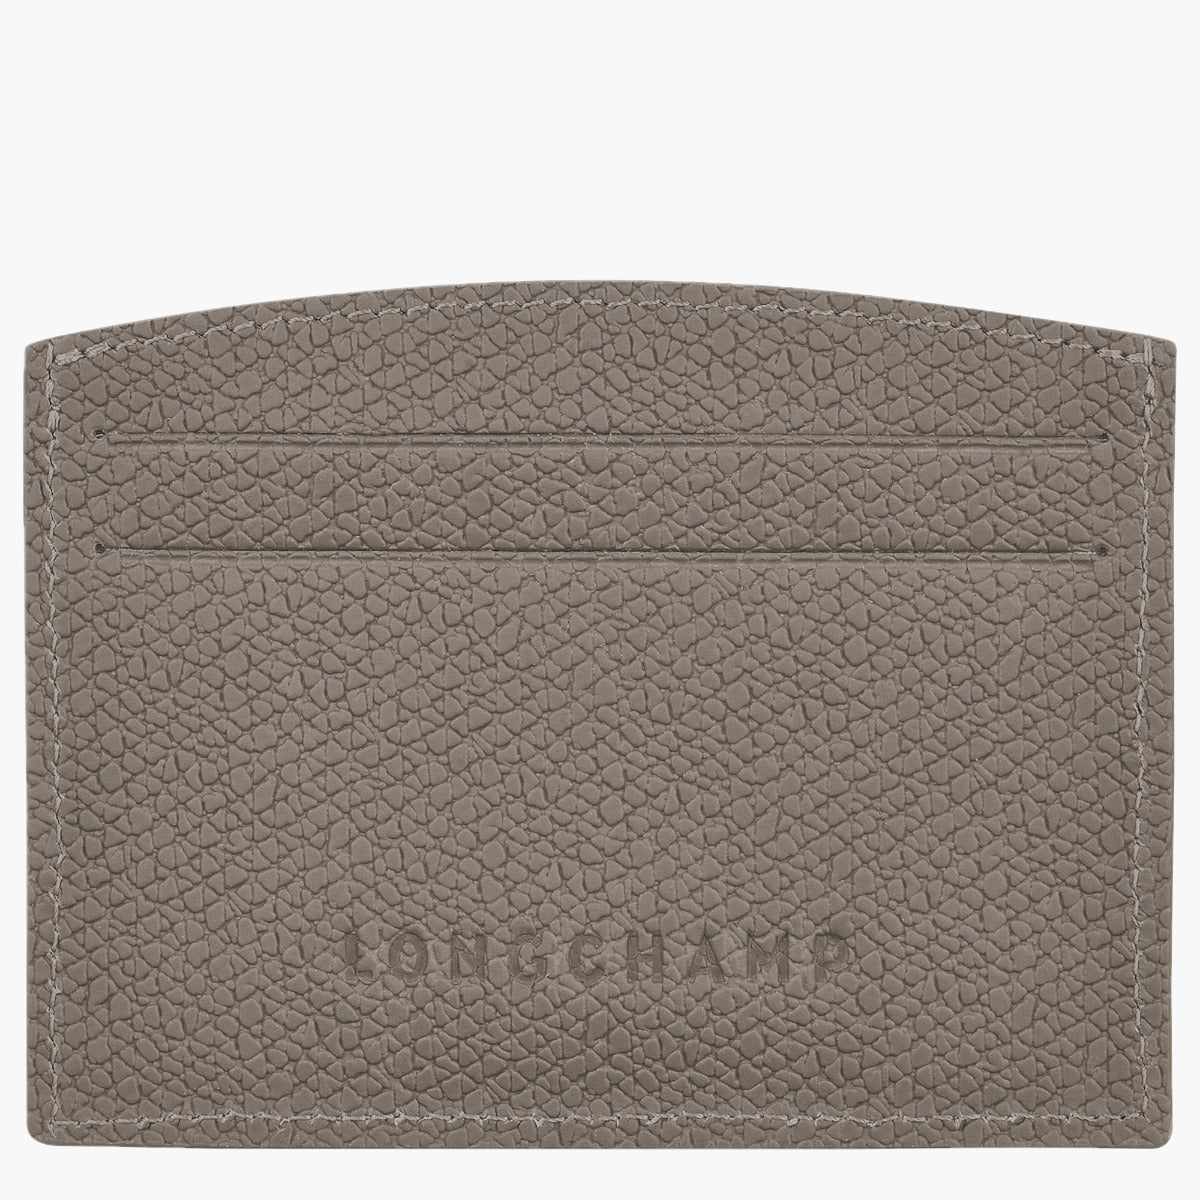 Longchamp Roseau Card Cases | LEVISONS